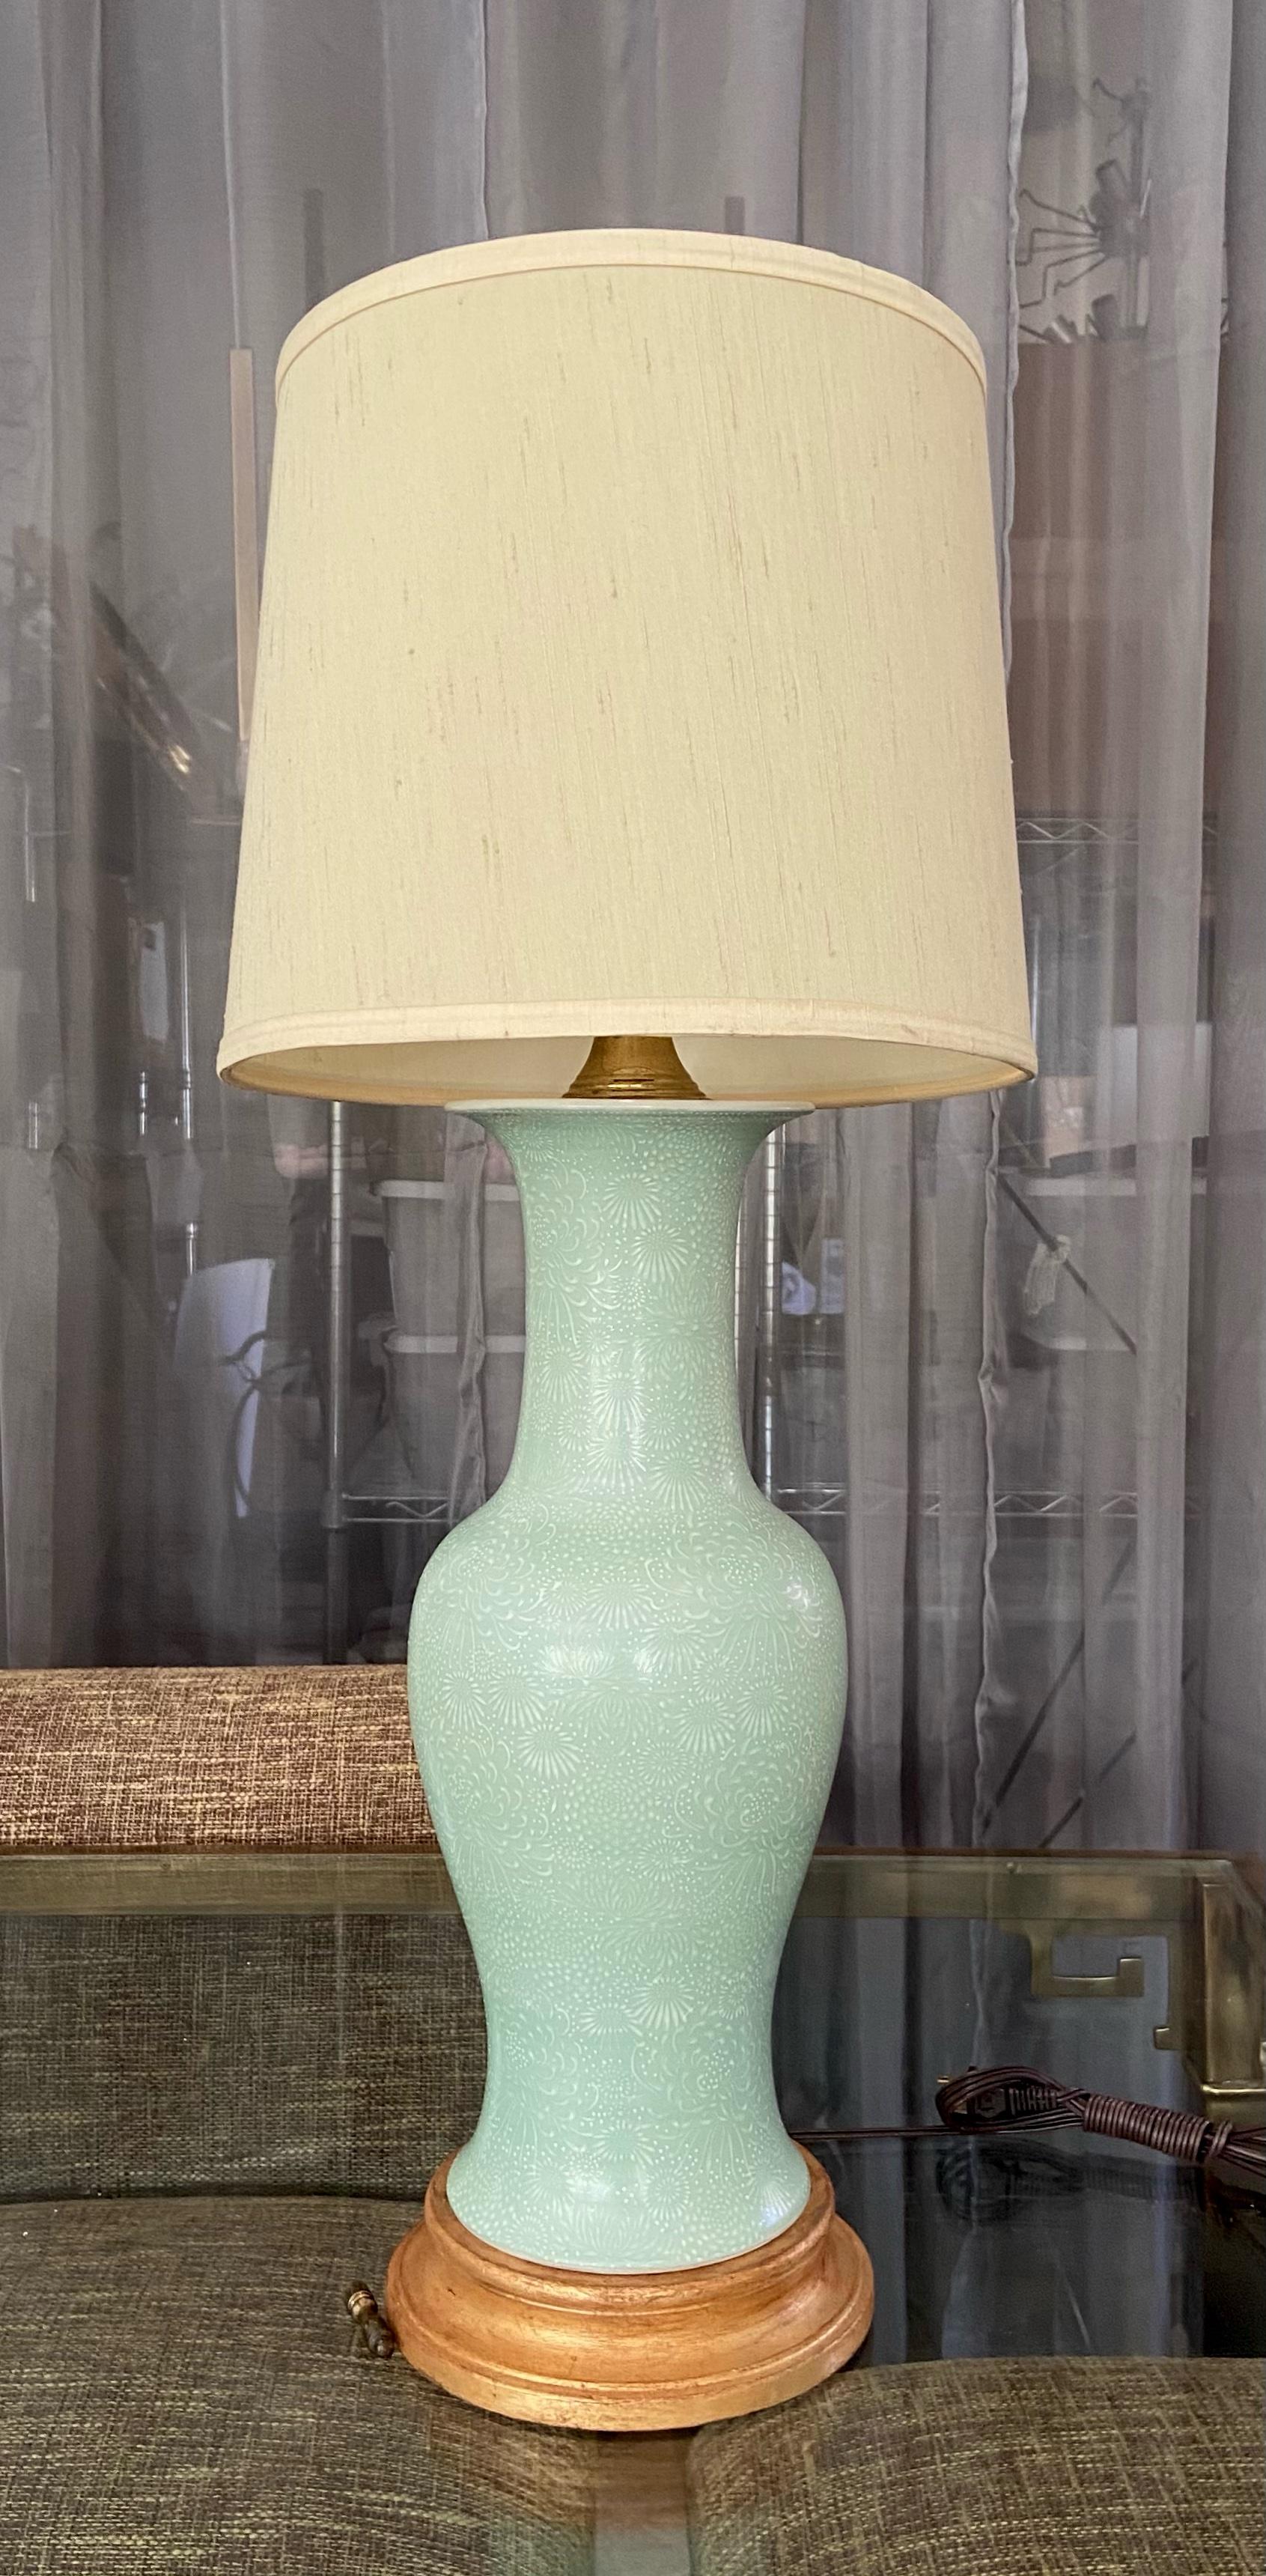 Lampe de table unique en porcelaine japonaise, de forme balustre, incisée en vert céladon. Monté sur un pied de lampe en bois tourné et doré. Nouvellement câblé avec une nouvelle prise à 3 voies et des accessoires. La partie vase en porcelaine